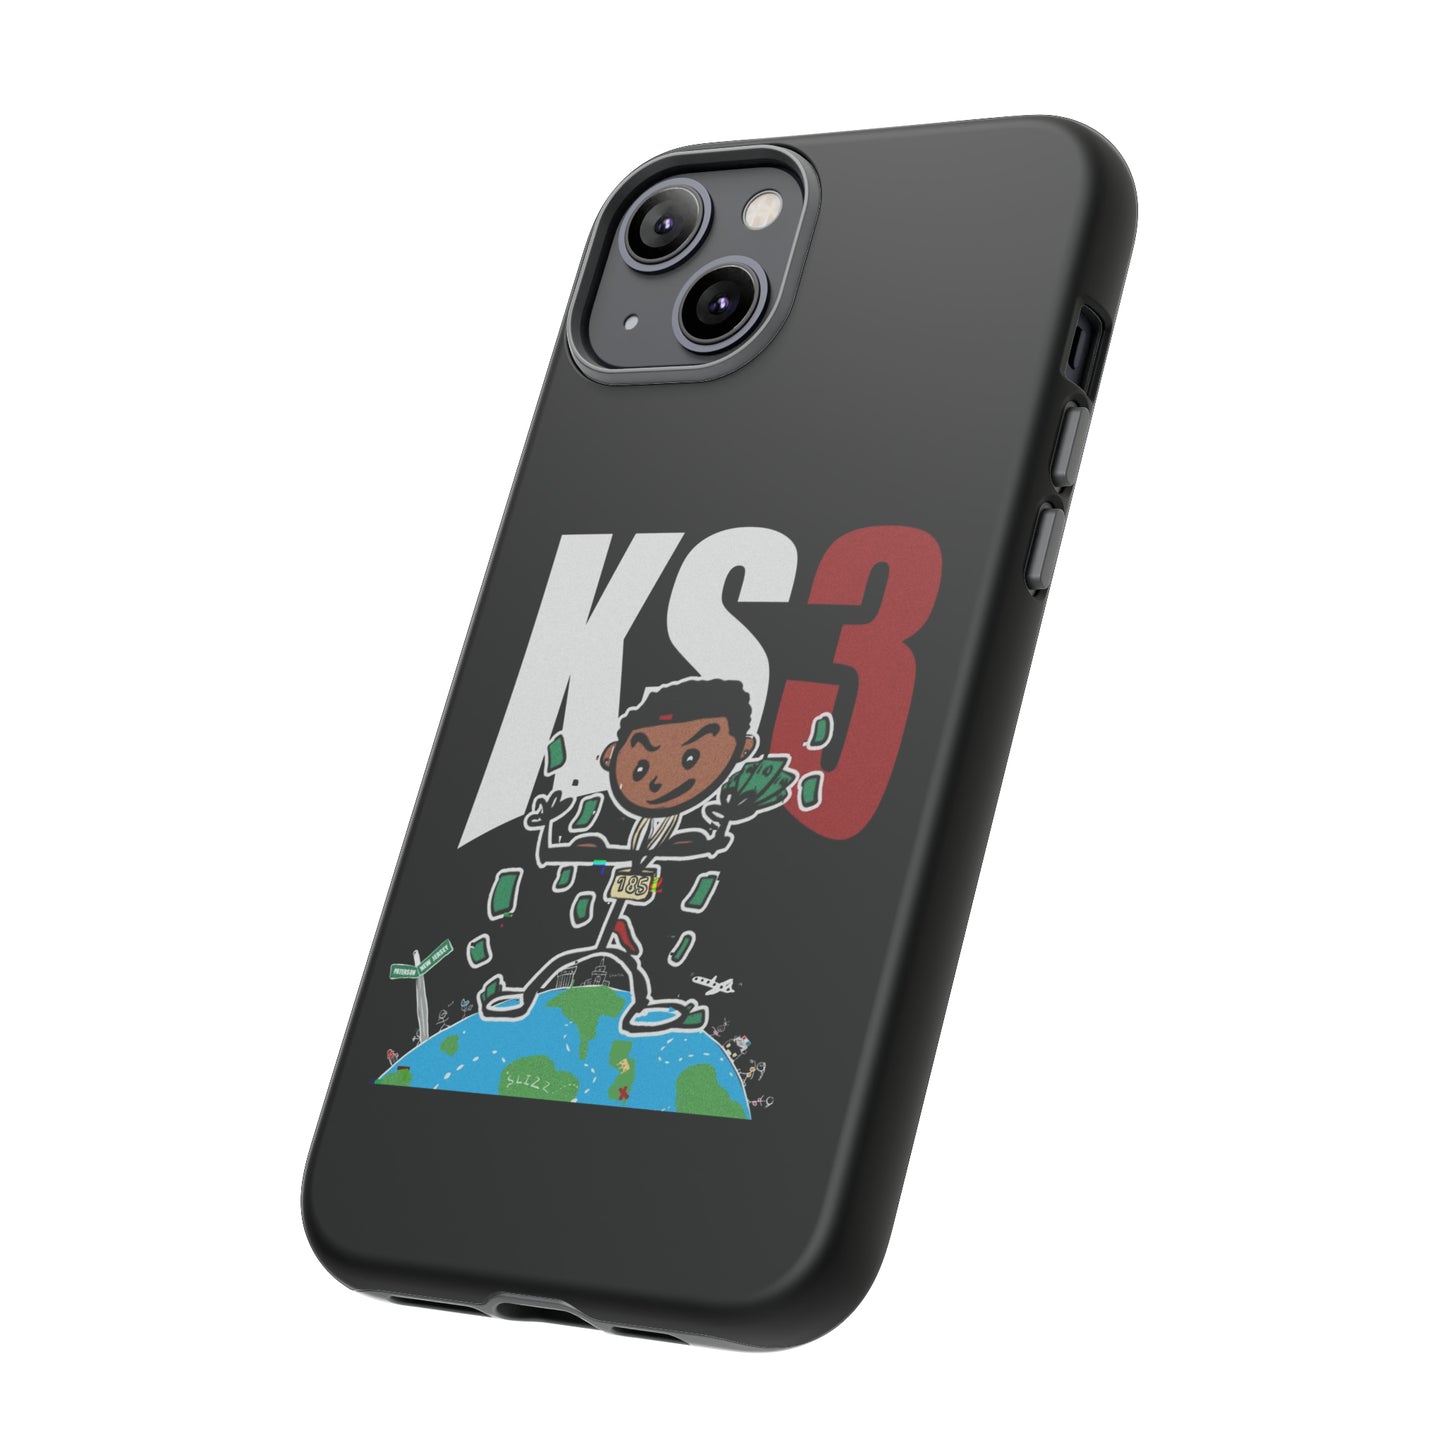 KS3 Phone Case